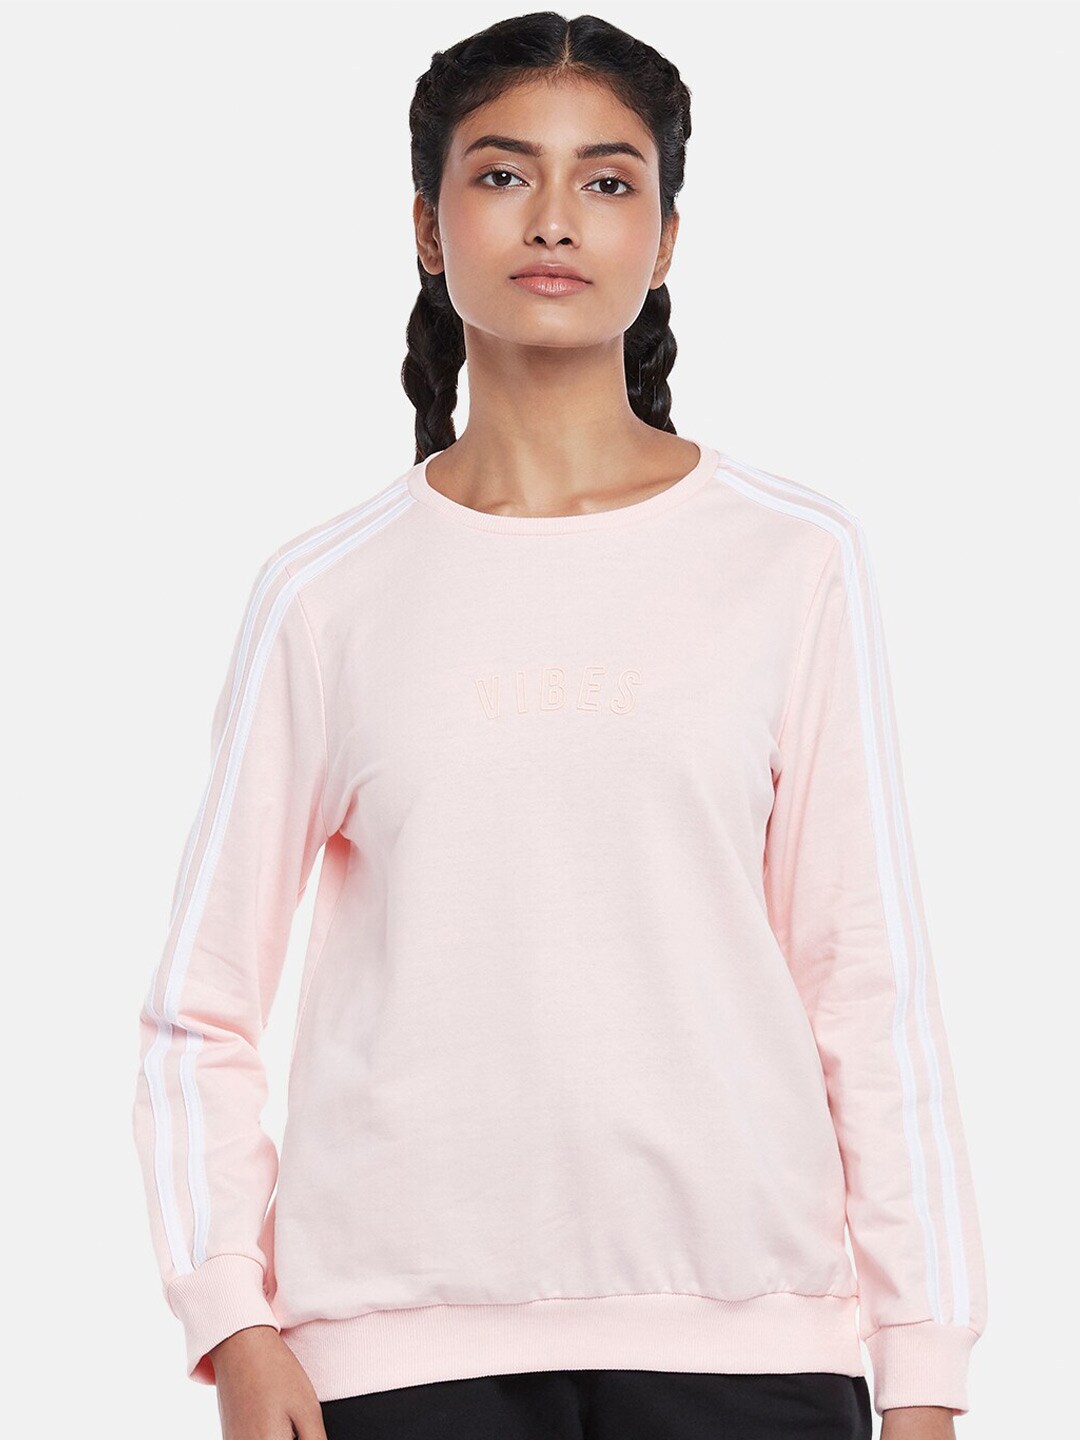 Ajile by Pantaloons Women Pink Sweatshirt Price in India